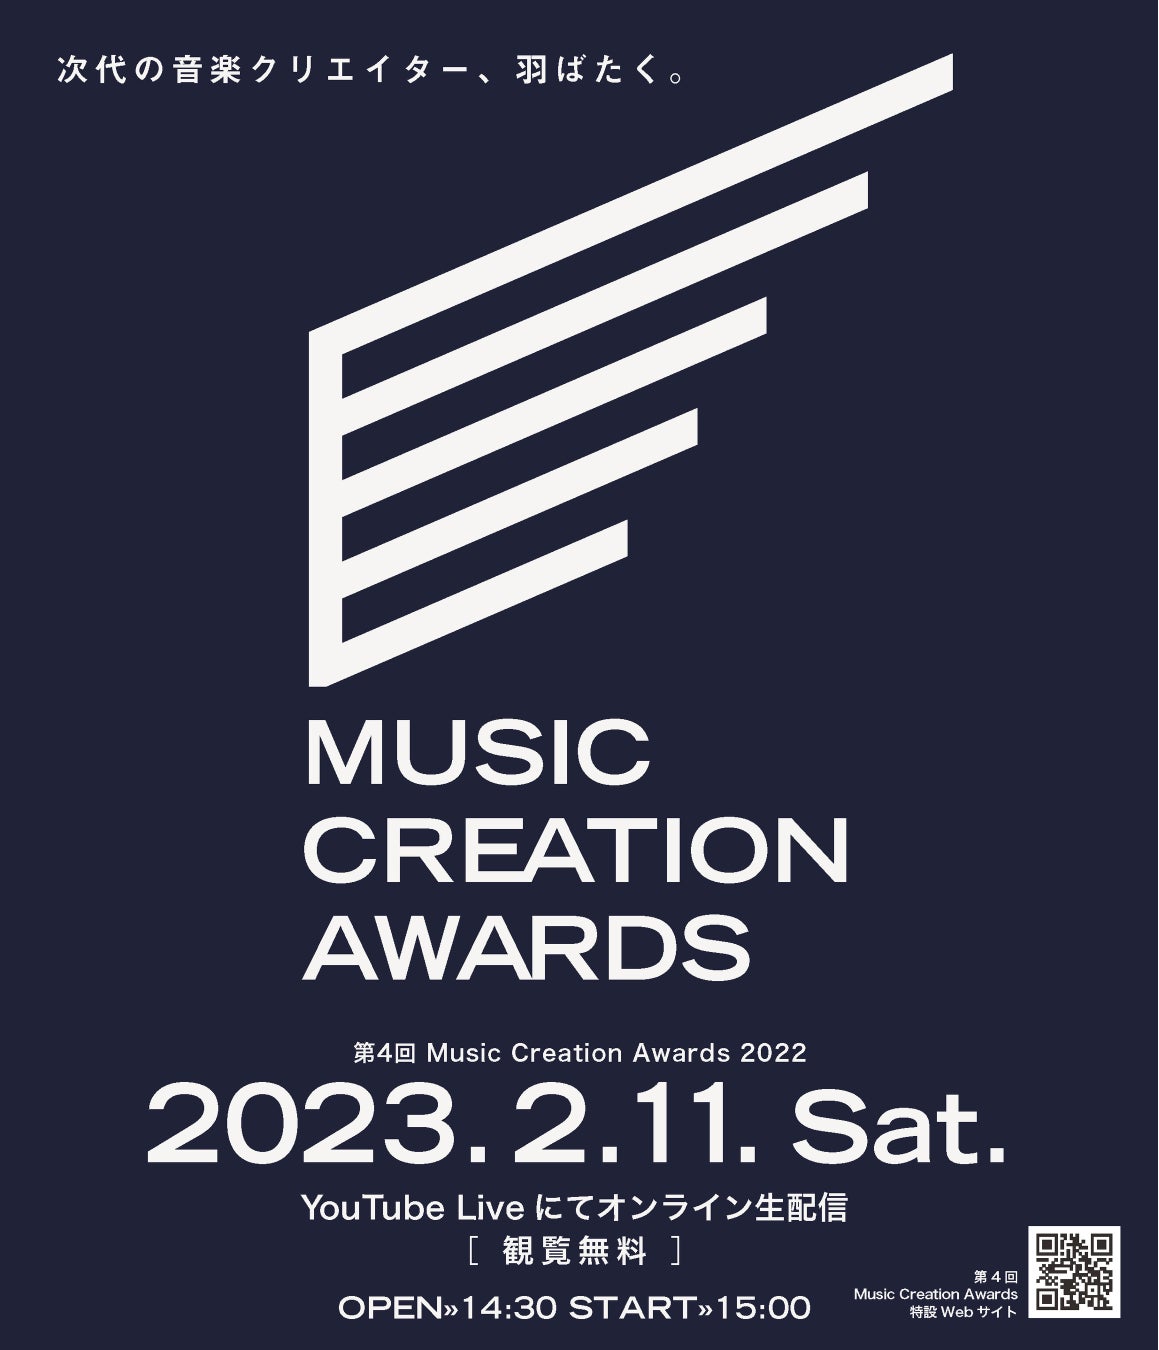 【大阪音楽大学】次代の音楽クリエイター、羽ばたく。視聴投票でオンライン生配信がさらに楽しく！第4回 Music Creation Awards 2022 開催。